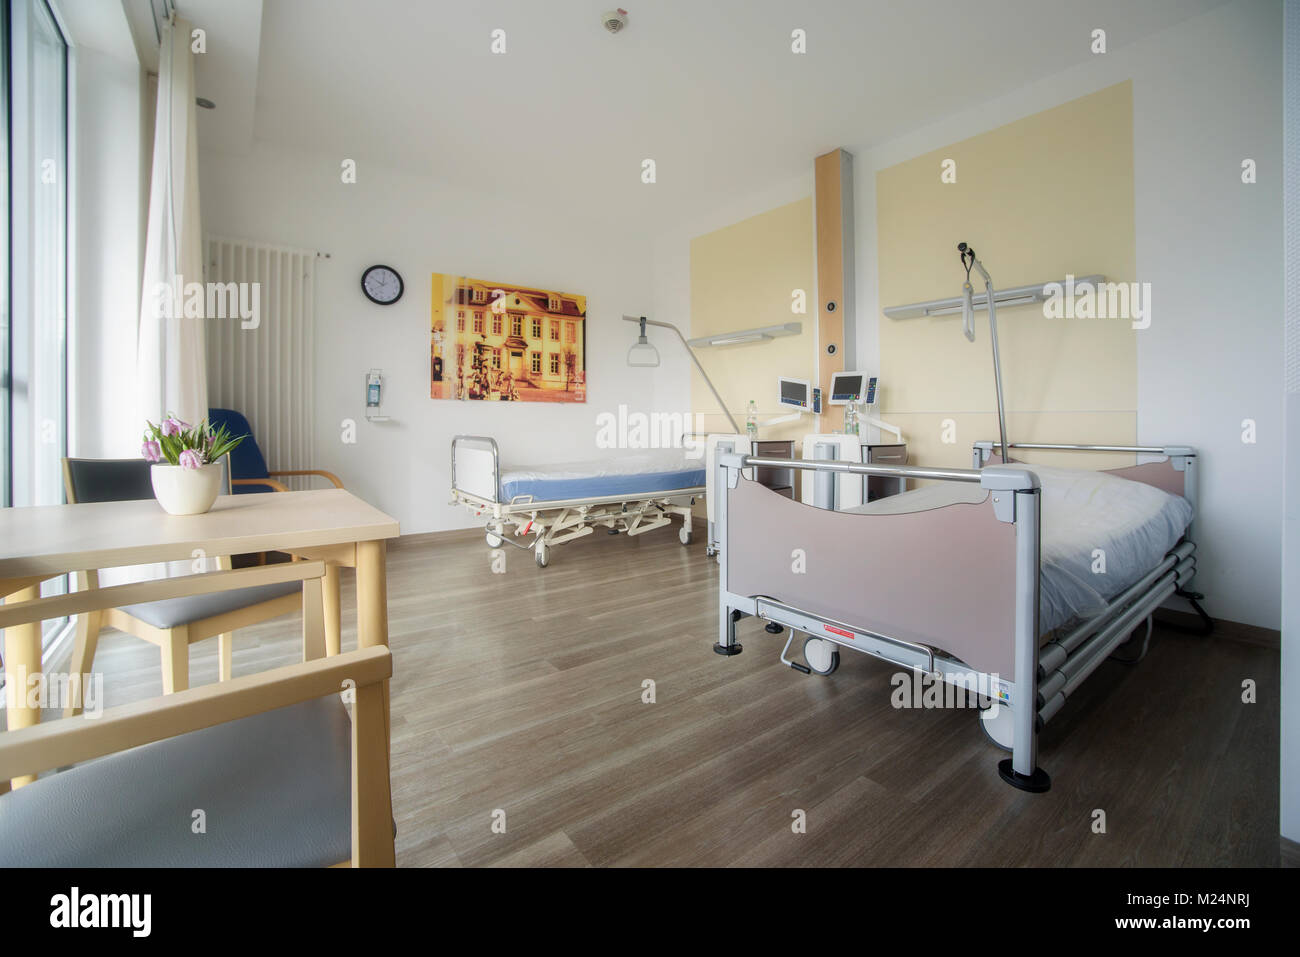 Patientenzimmer im Krankenhaus Stock Photo